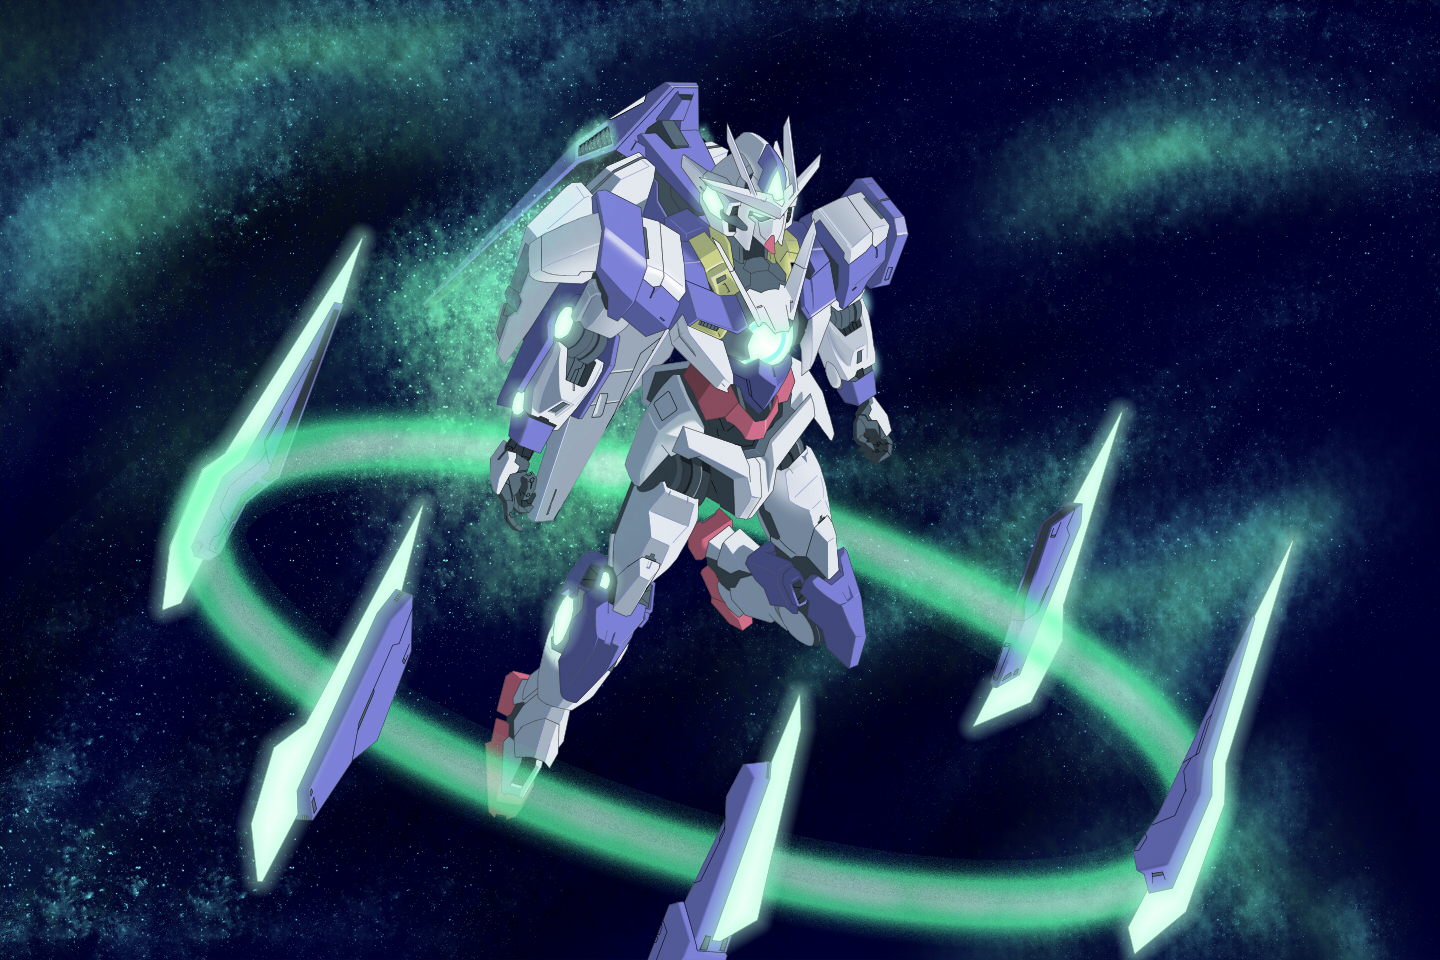 Anime 1440x960 anime mechs Gundam 00 Qan[T] Mobile Suit Gundam 00 Super Robot Taisen artwork digital art fan art